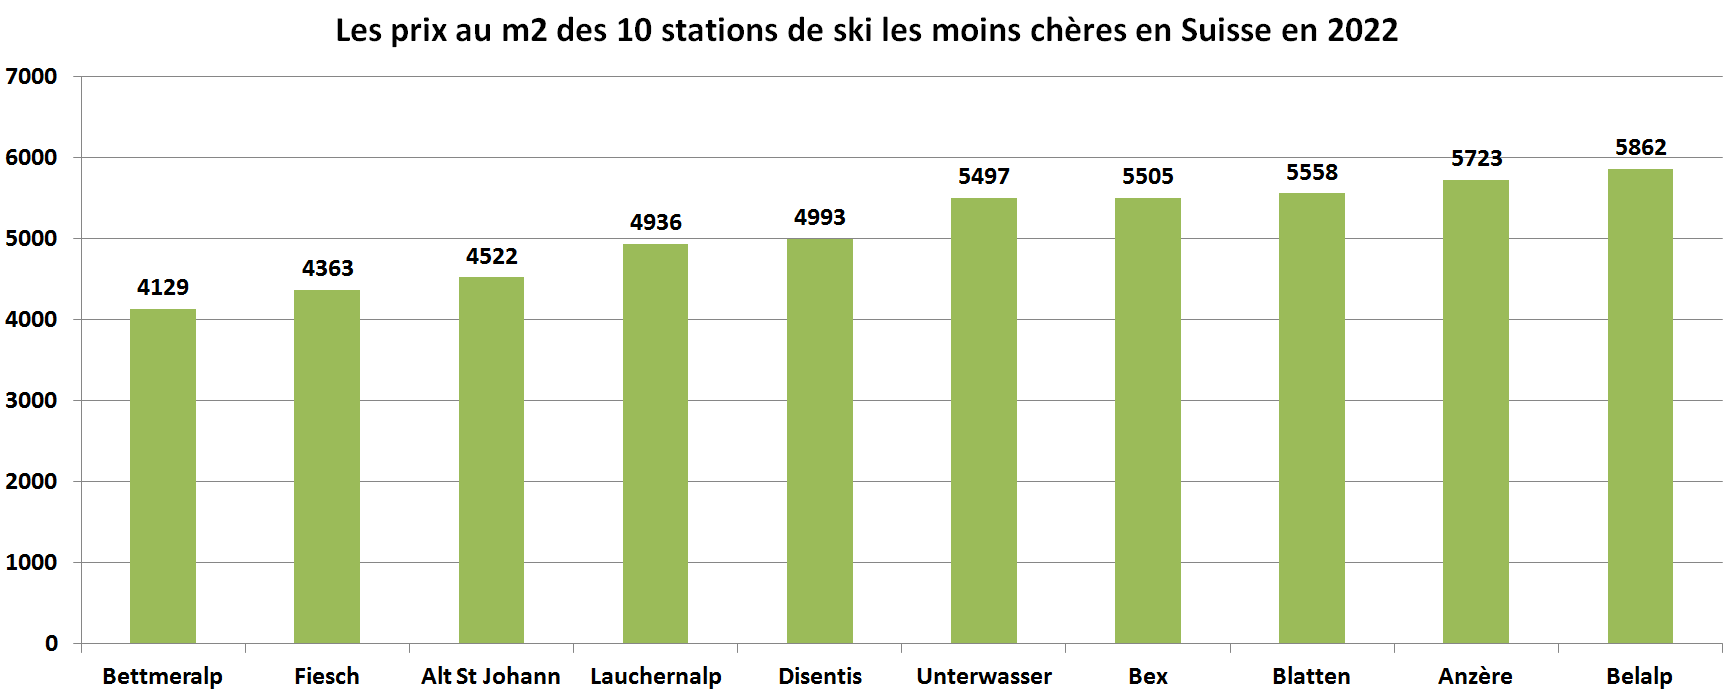 prix m2 station de ski les moins cheres suisse 2022